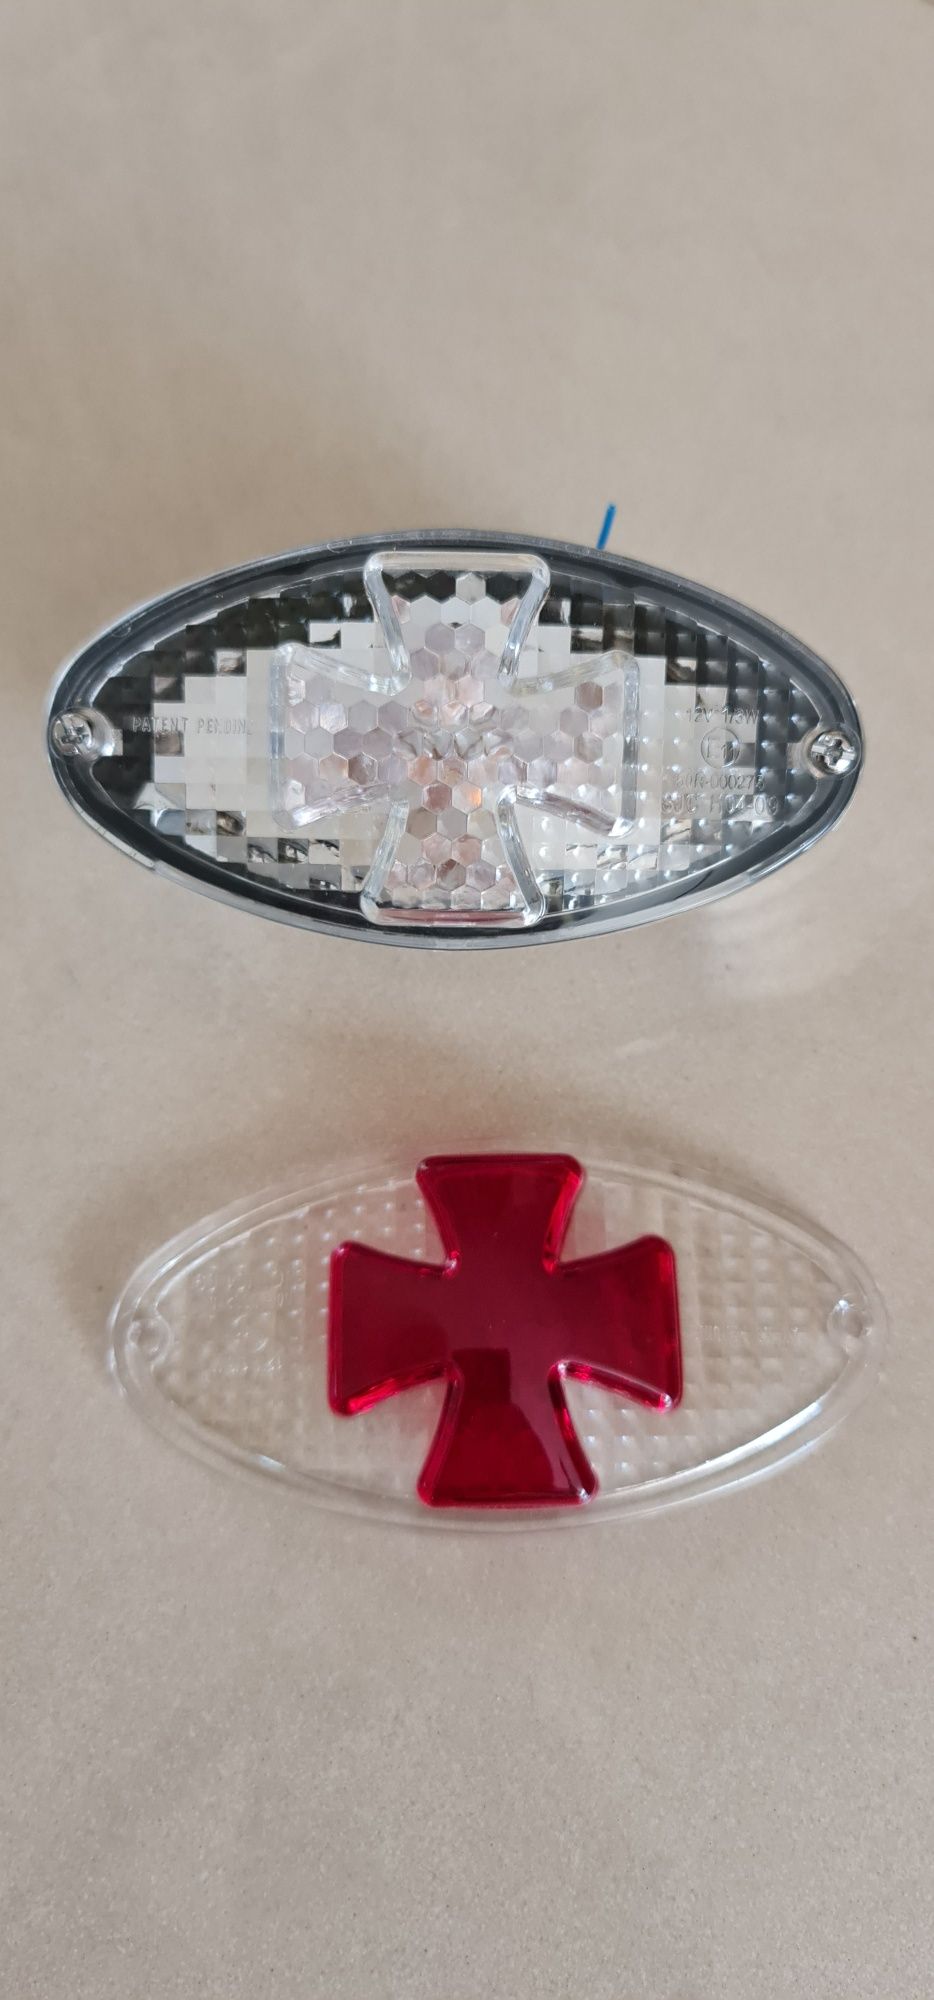 Задний фонарь мото, мальтийский крест + сменное стекло. Для тюнинга.